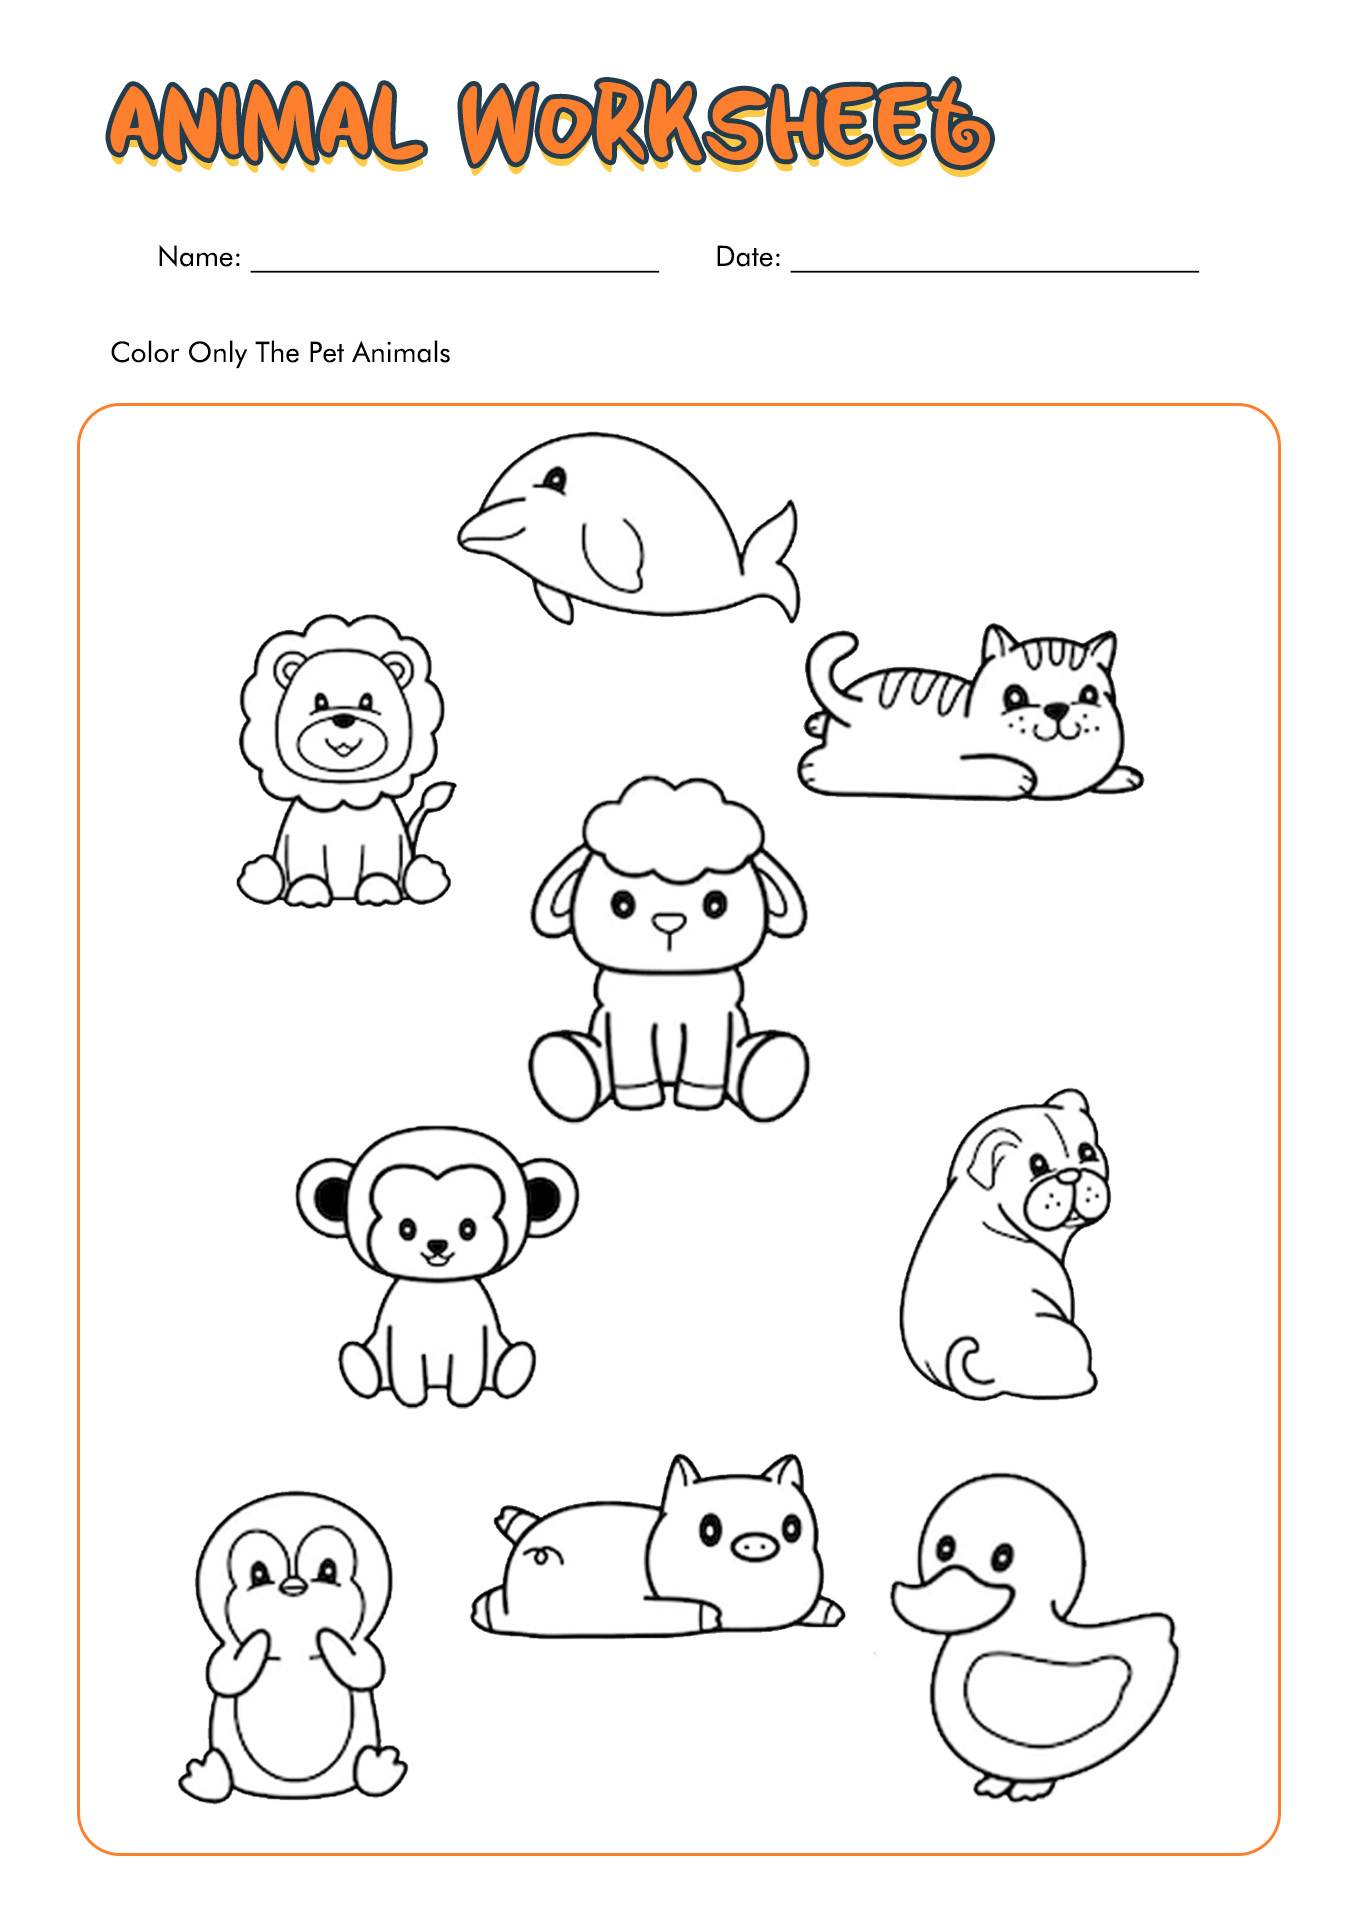 Pet Animal Worksheets for Kindergarten Image